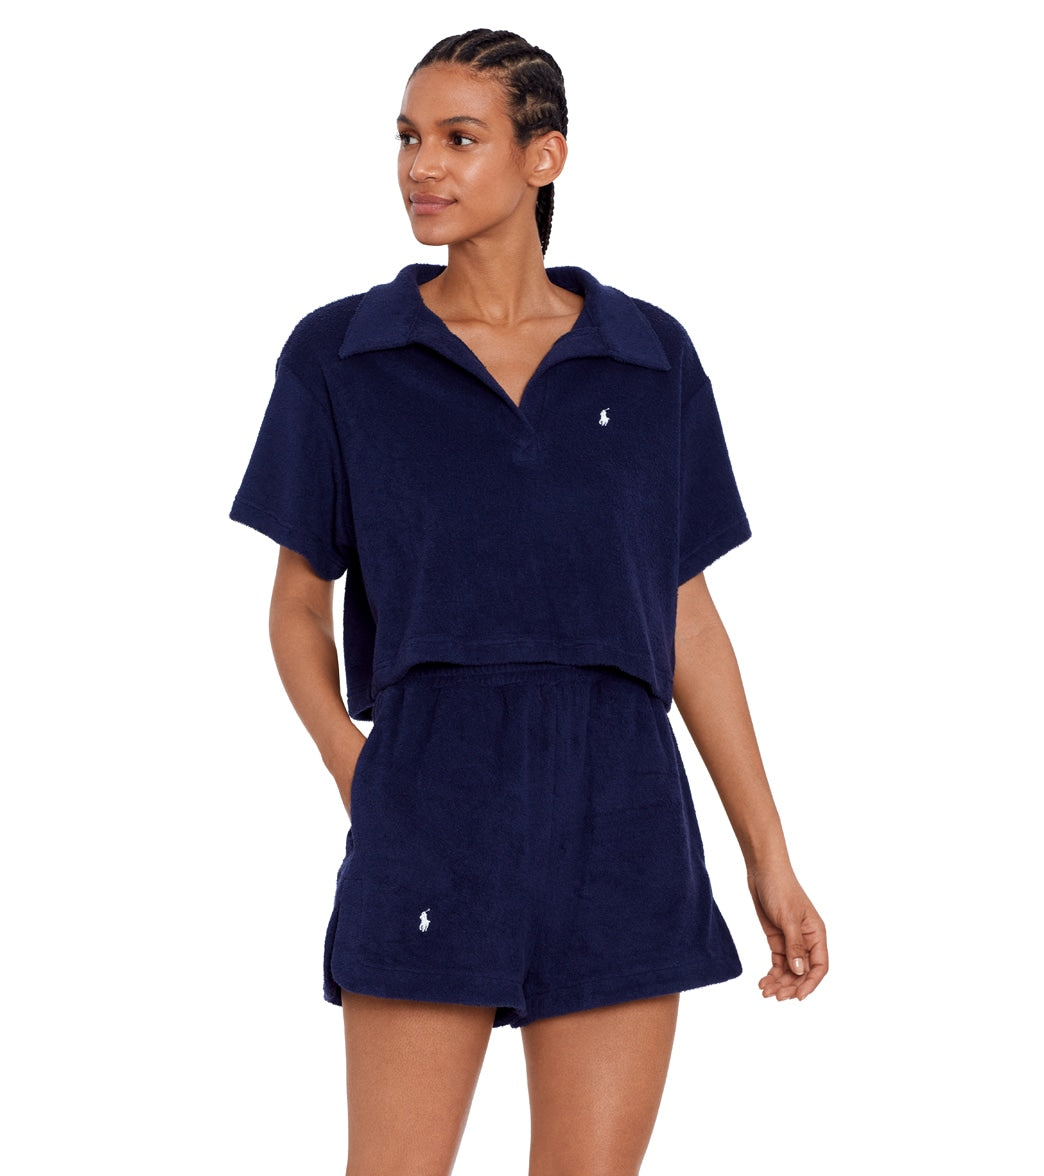 Polo Ralph Lauren Women's Terry Beachwear Polo Shirt and Short Set at